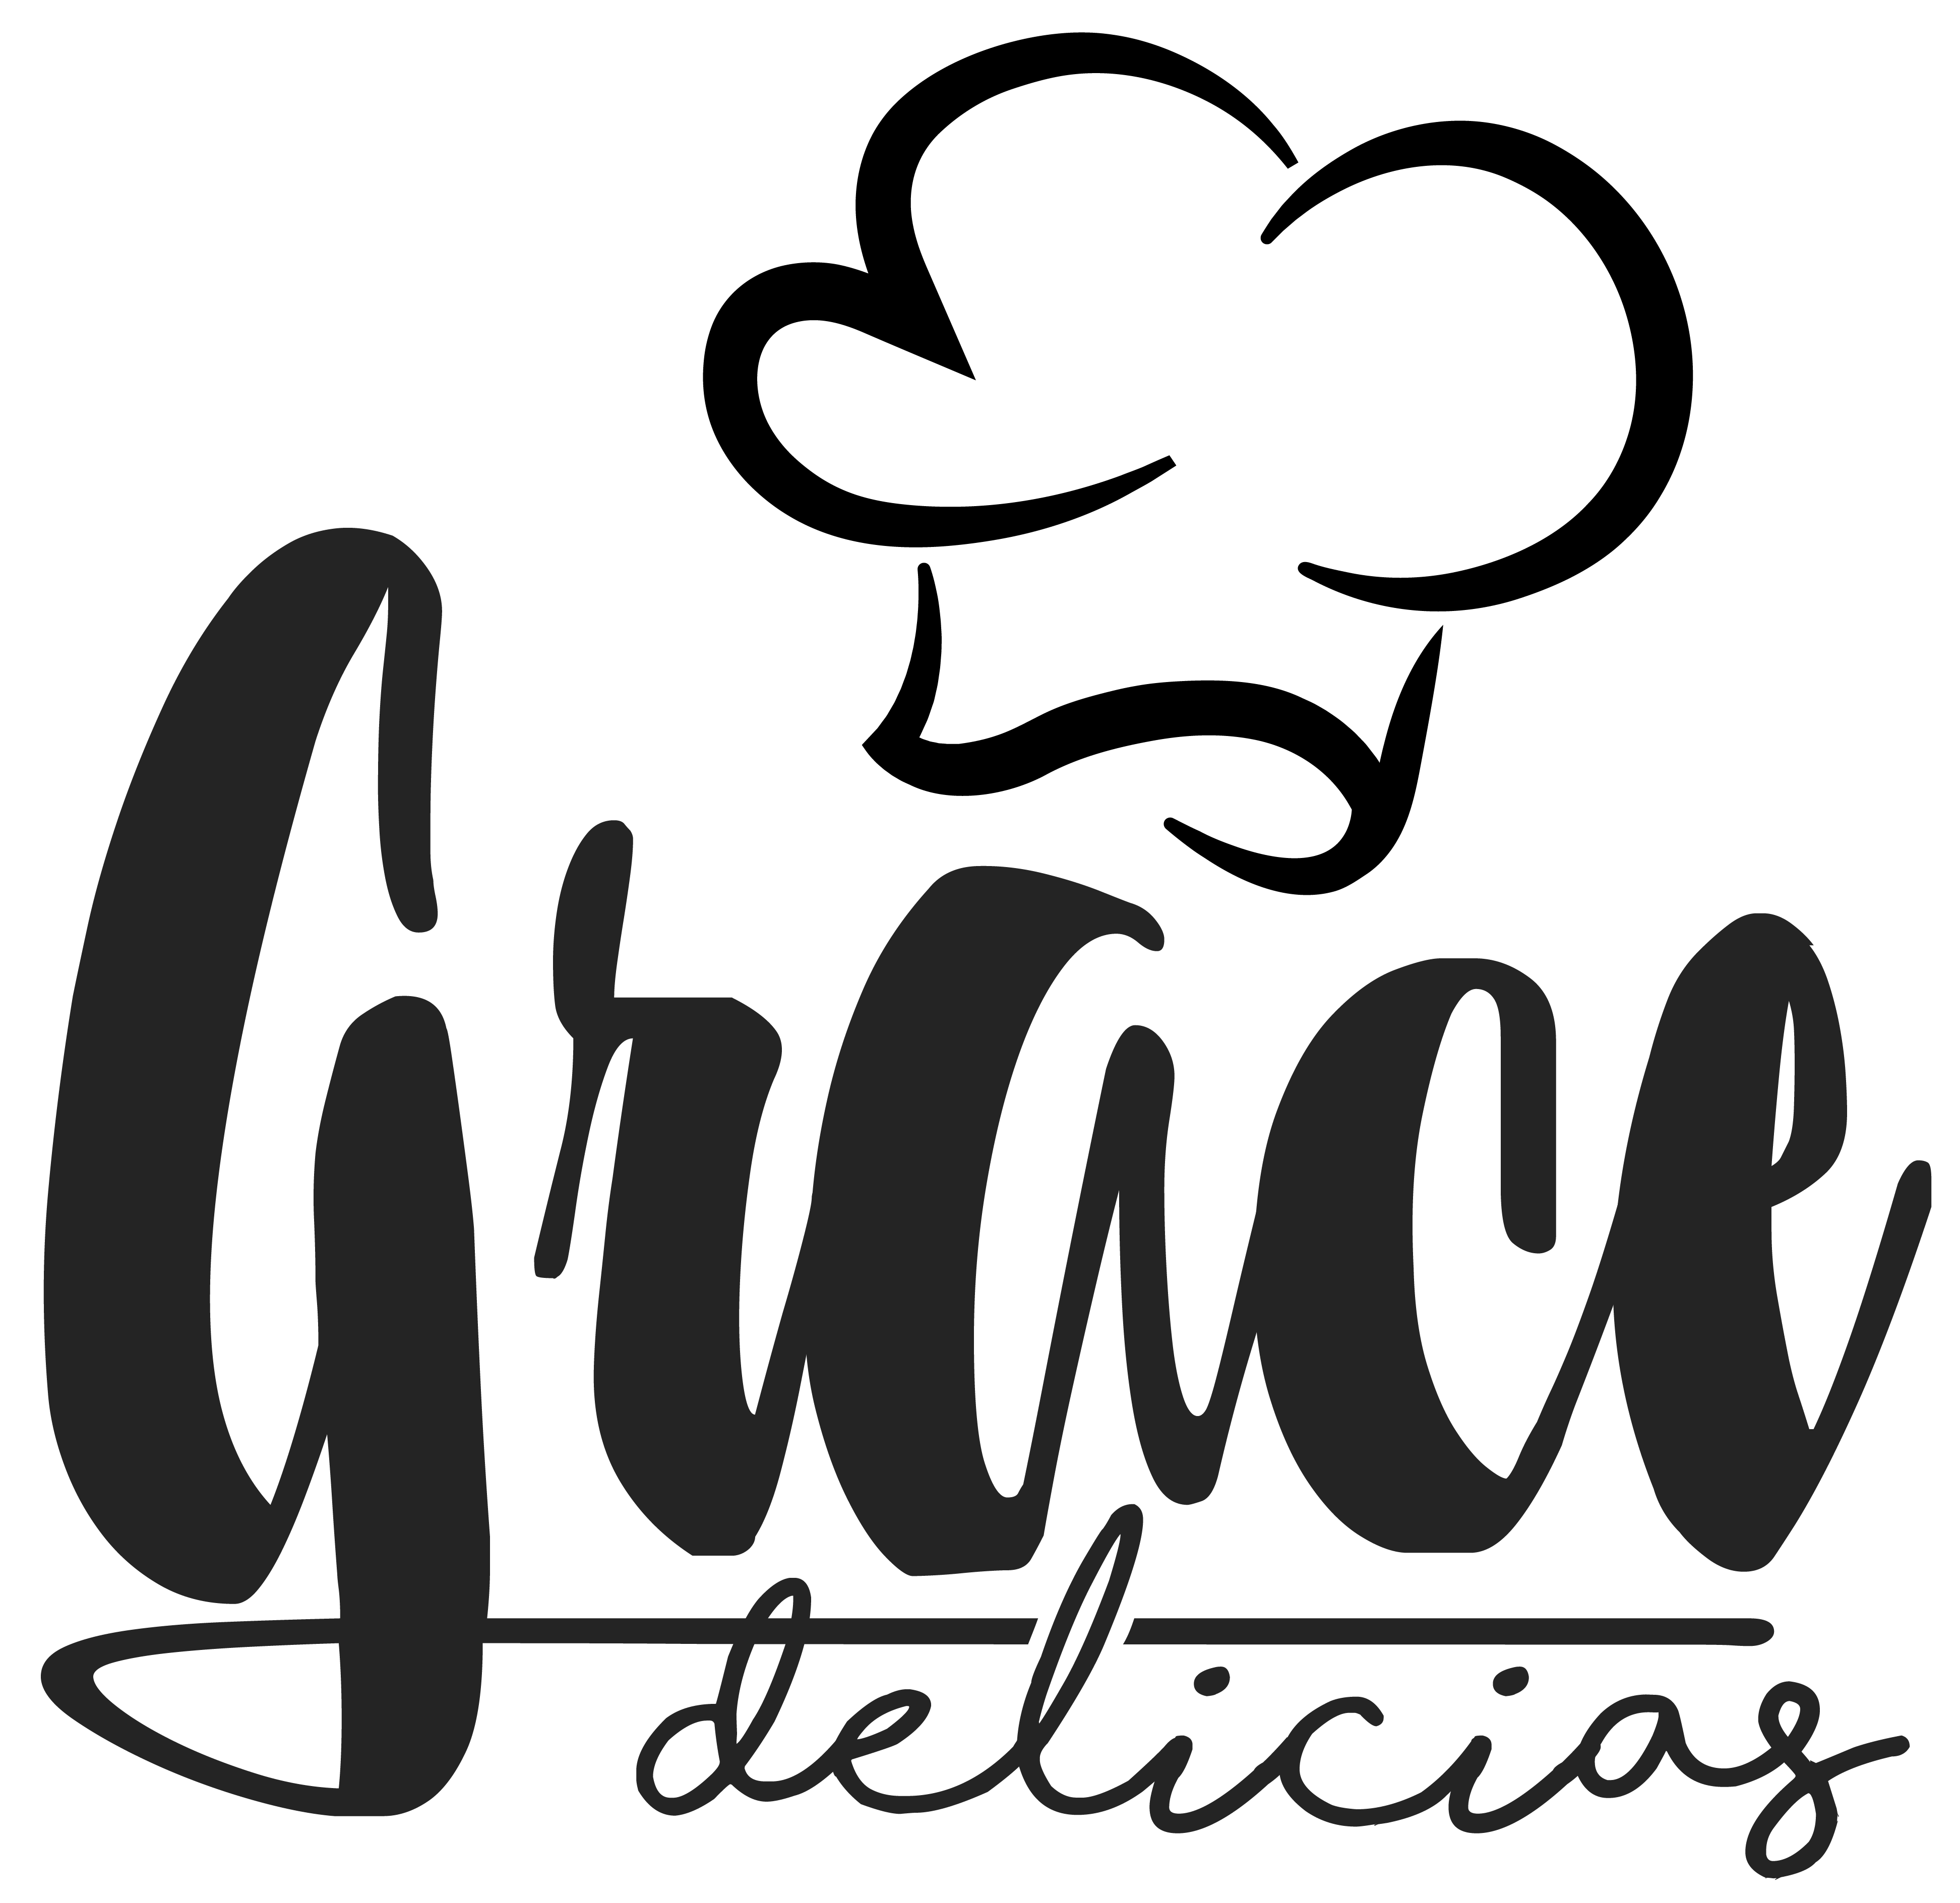 Grace delicias